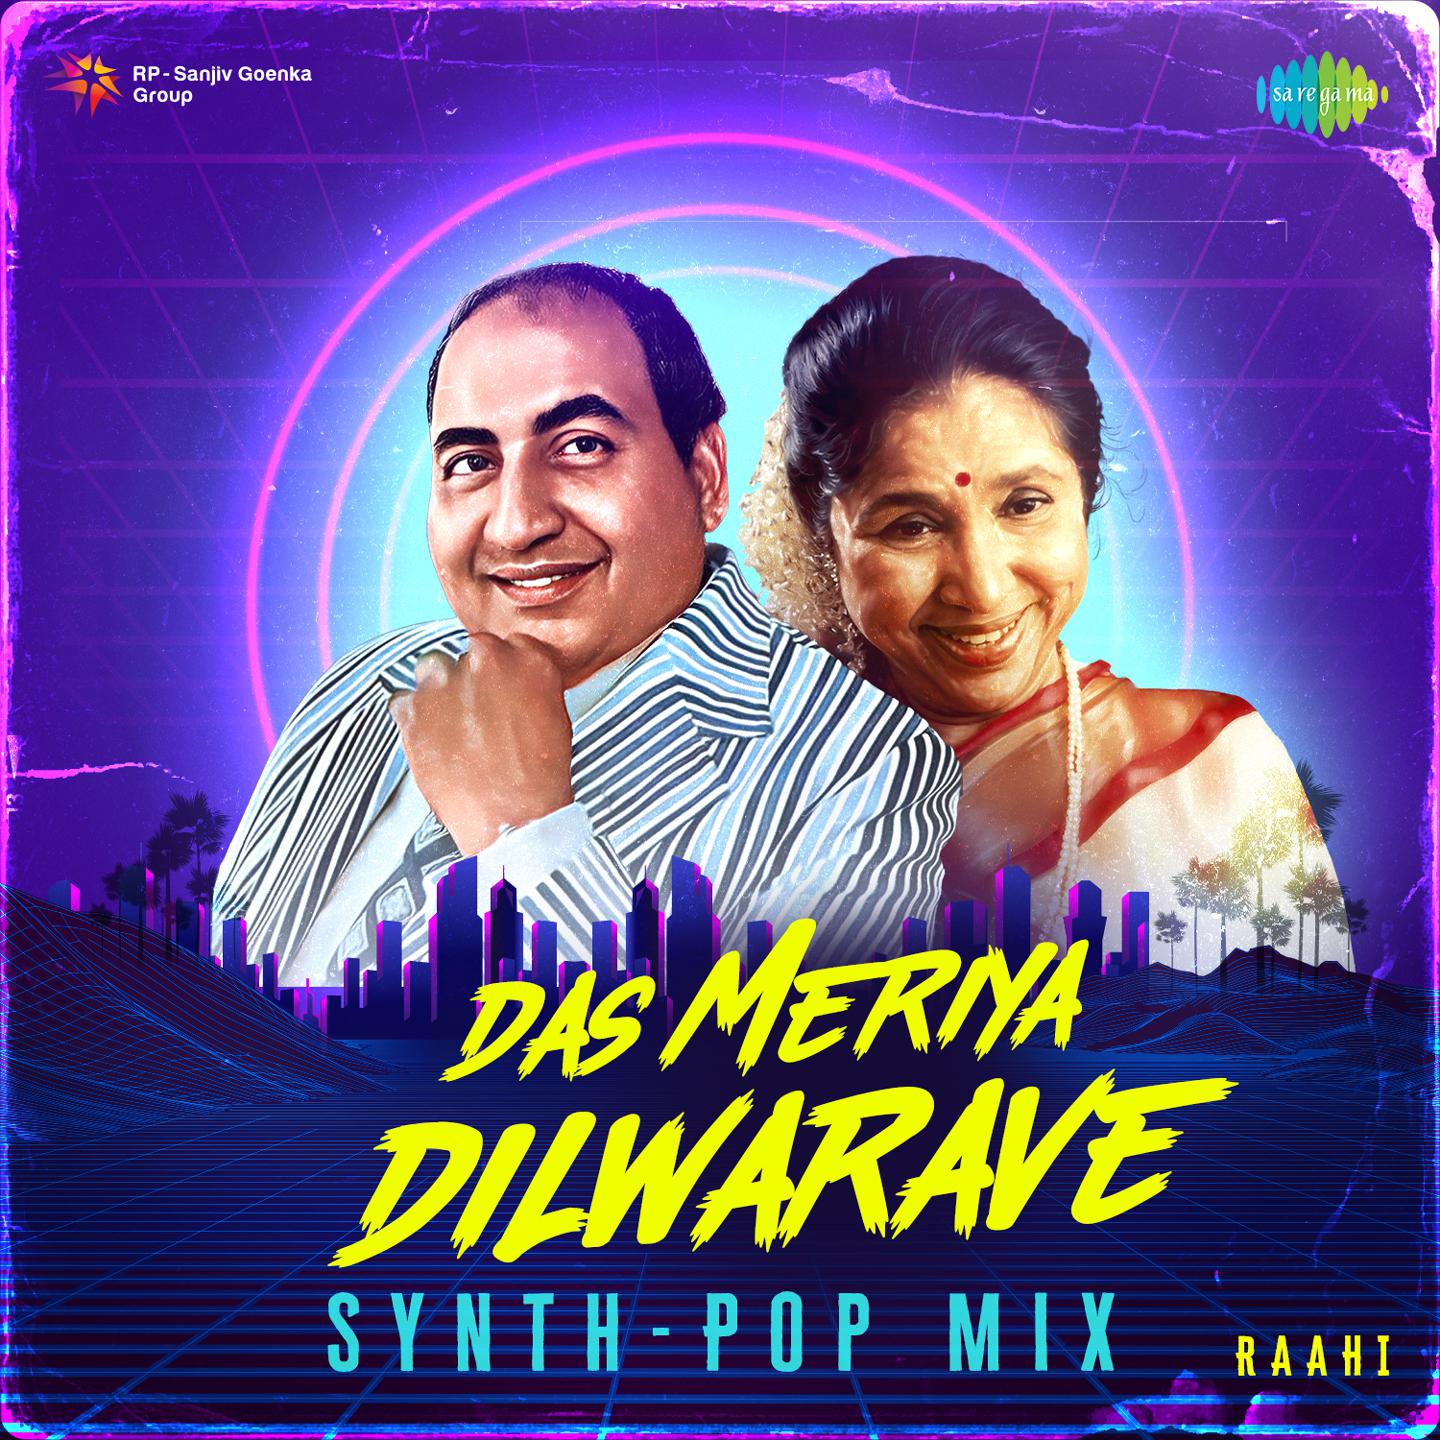 Raahi - Das Meriya Dilwarave Synth-Pop Mix